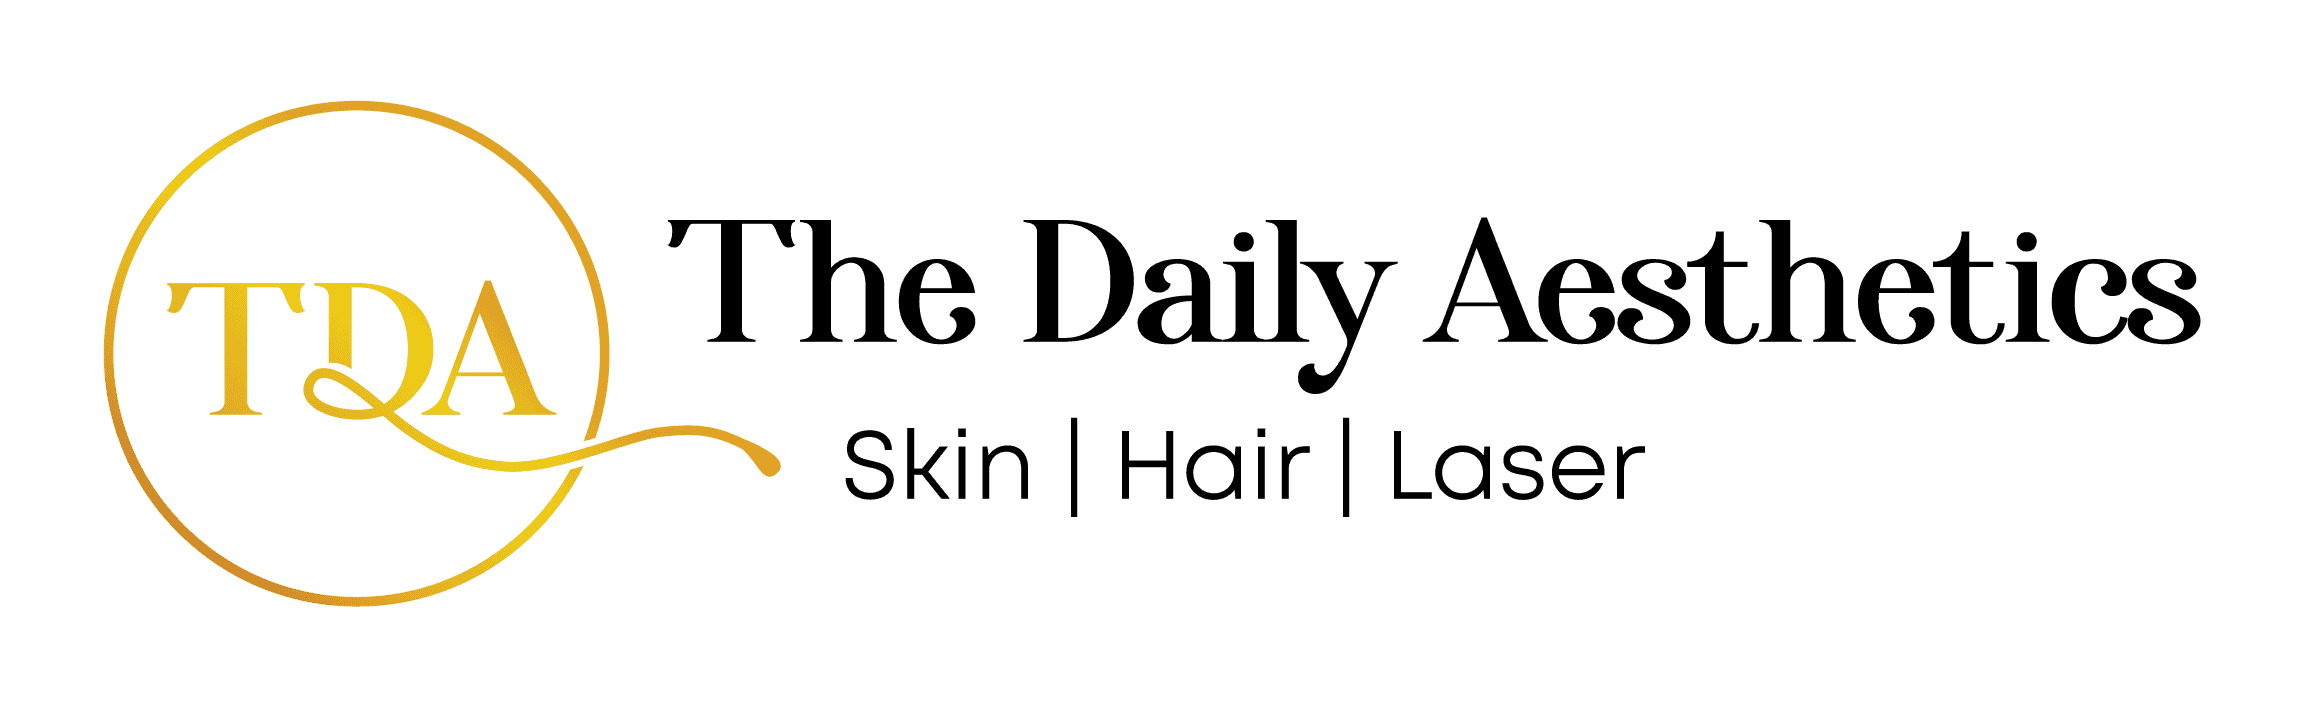 The daily Aesthetics logo